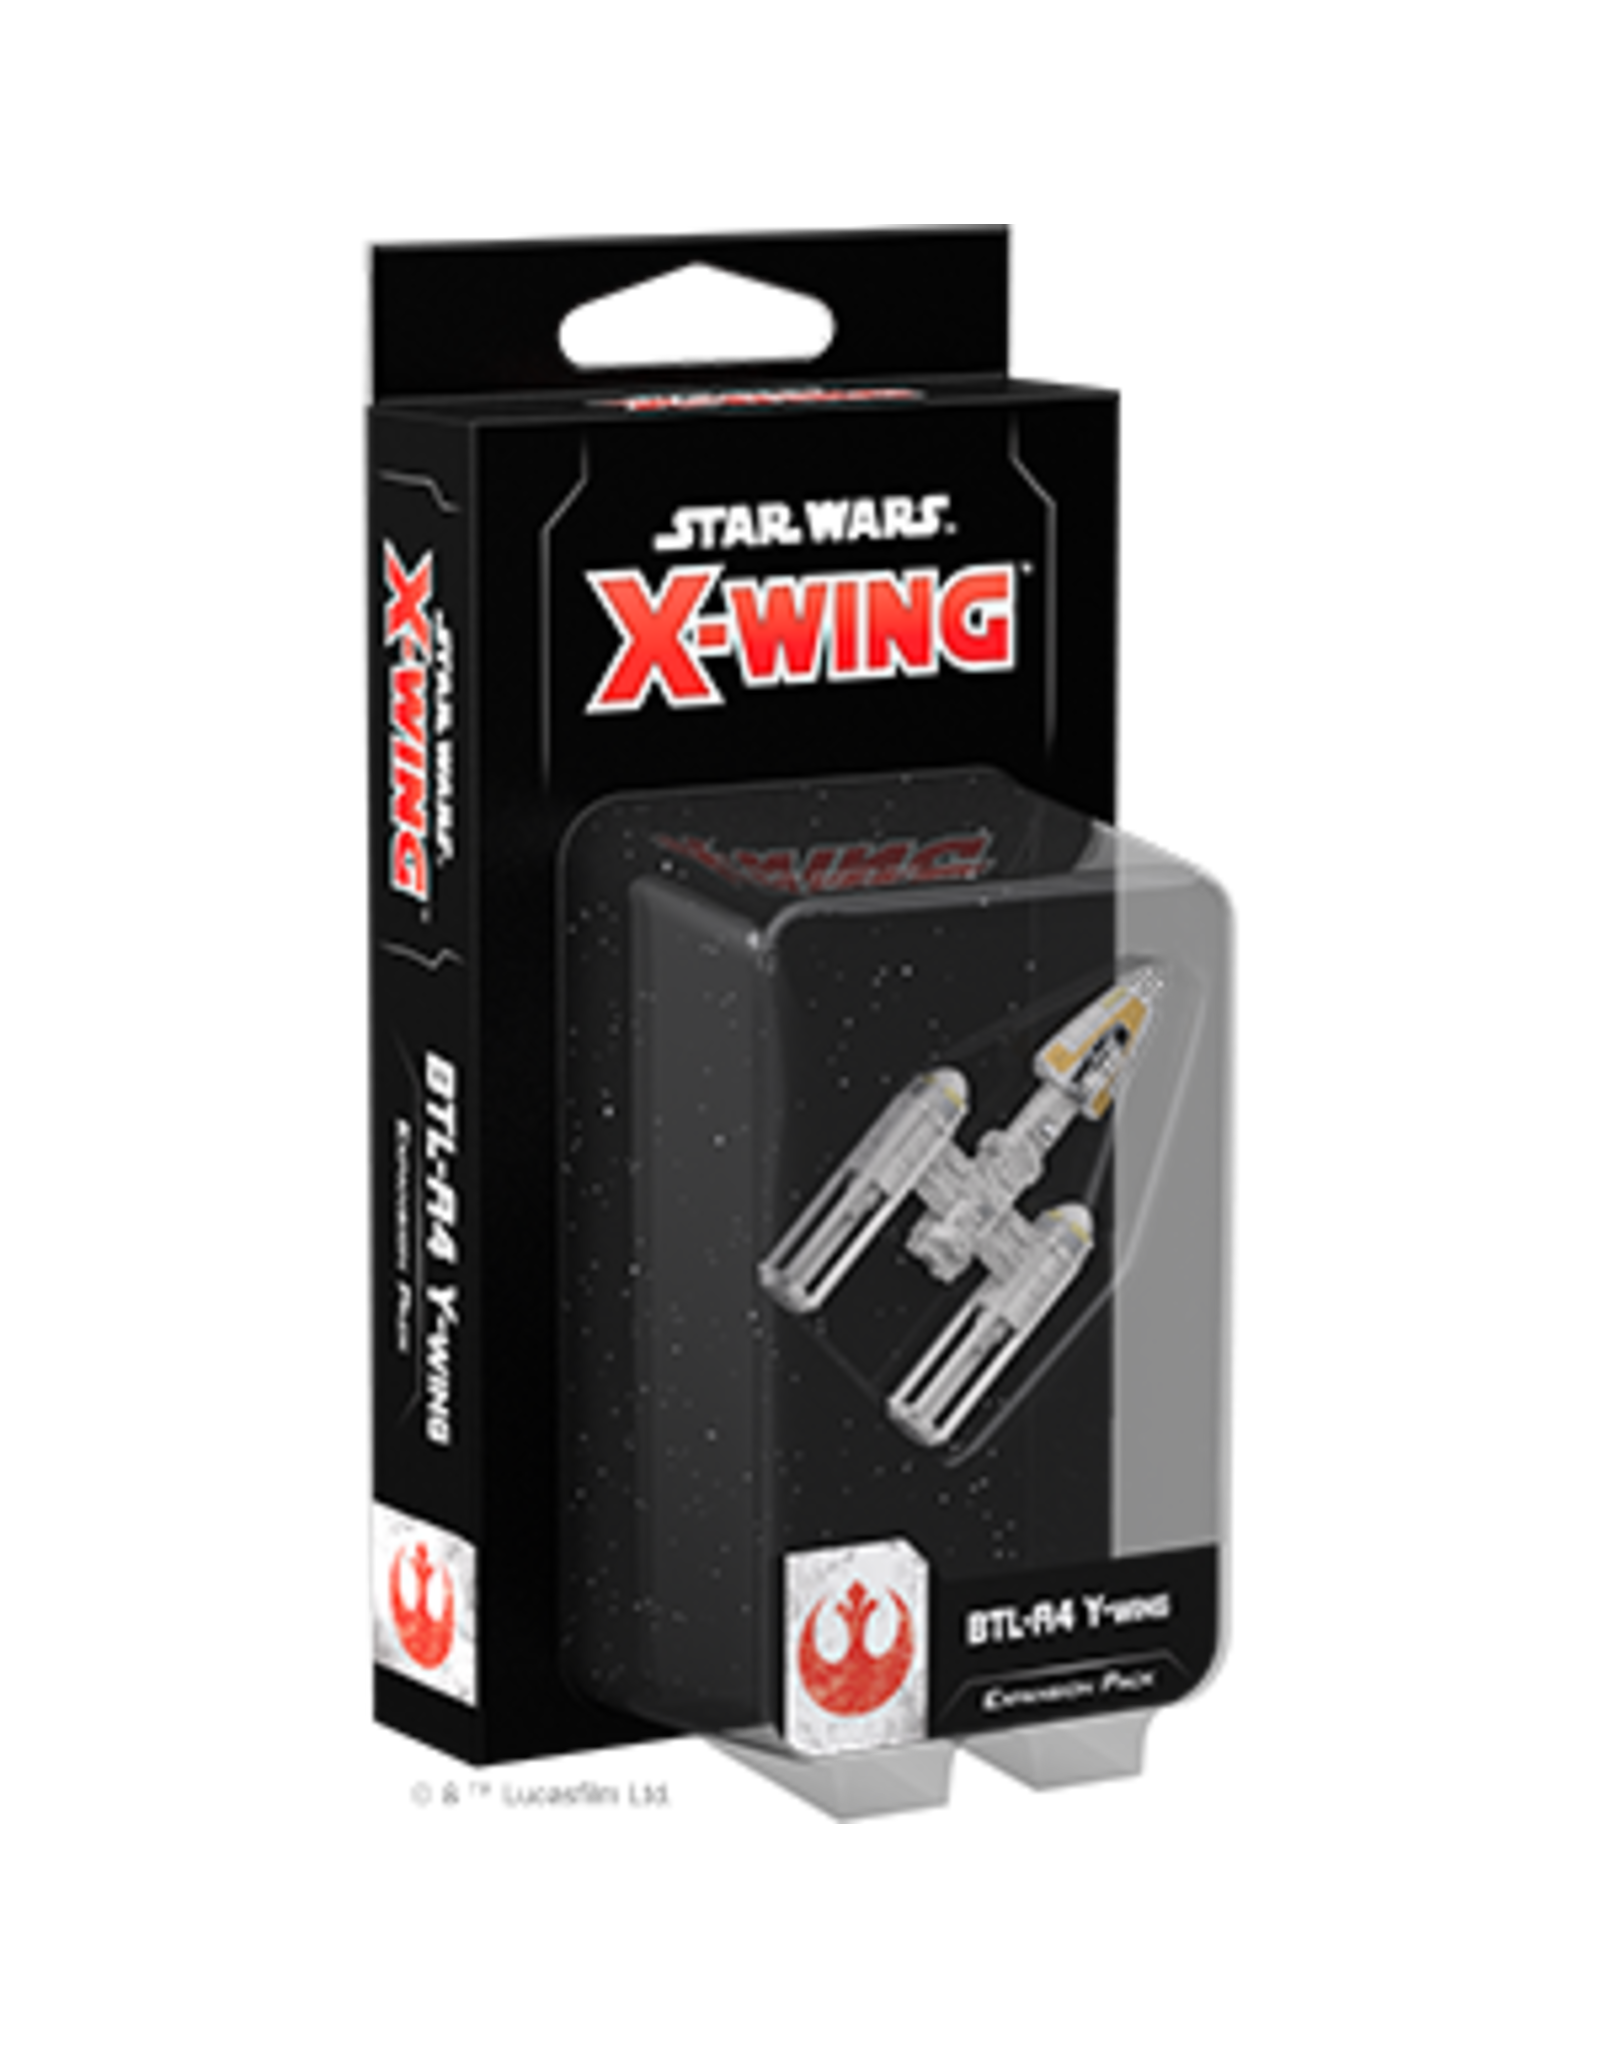 X-Wing Star Wars X-Wing 2nd Ed BTL-A4 Y-Wing